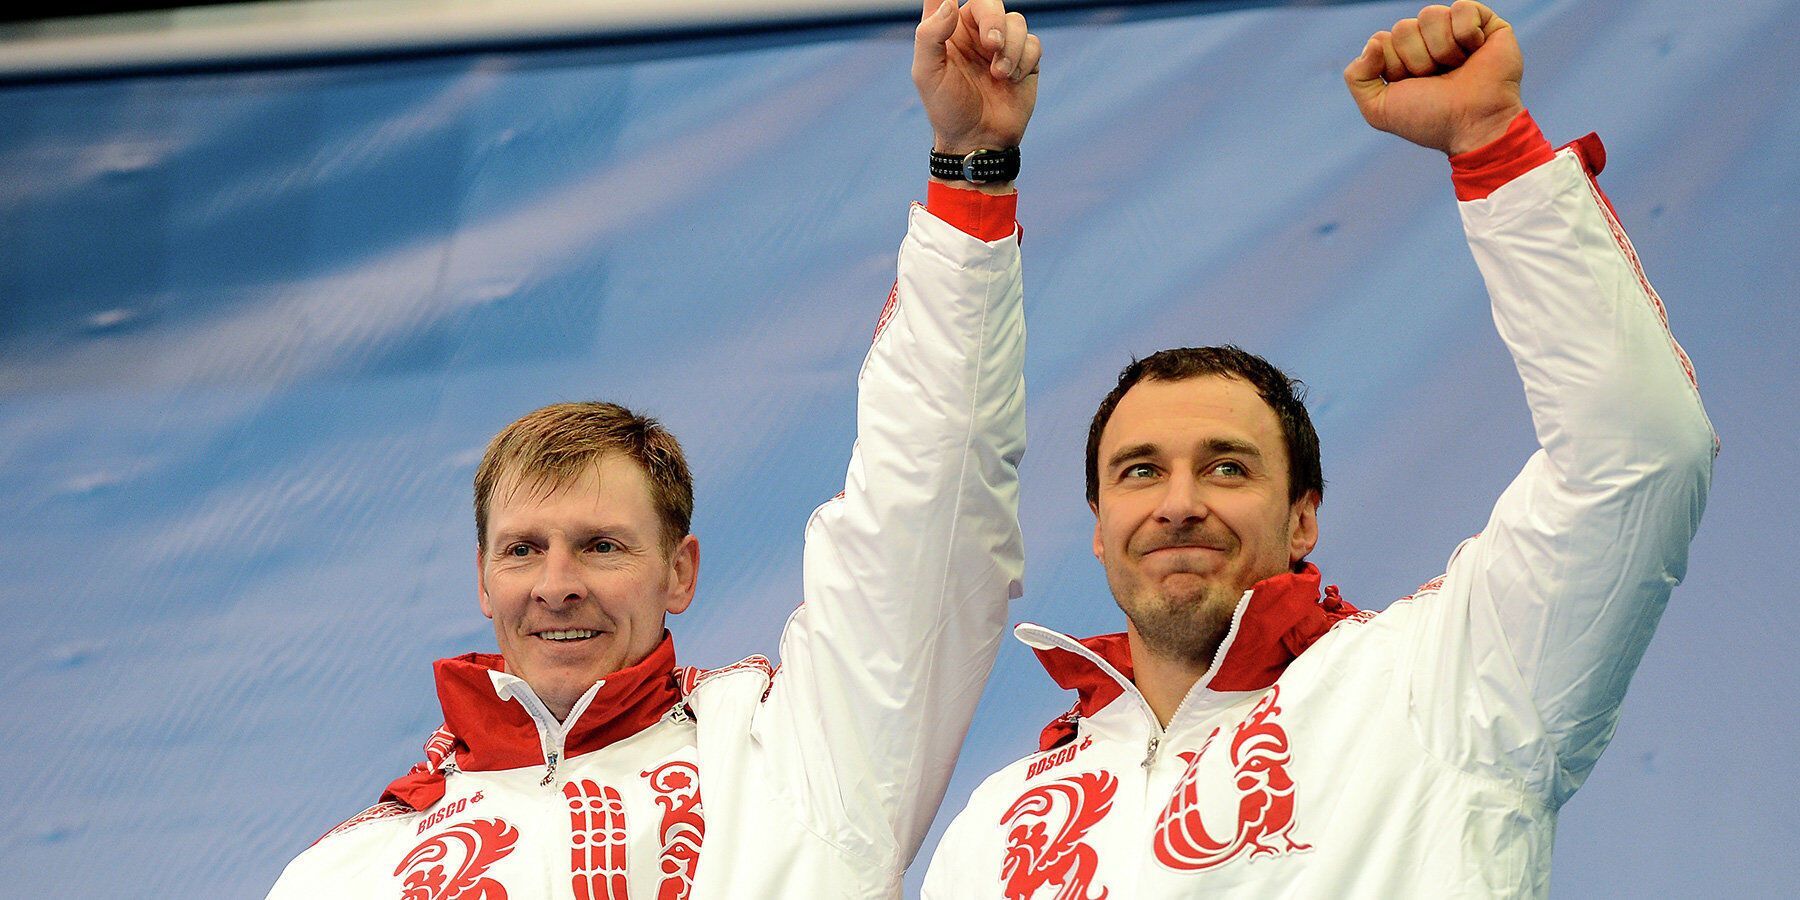 "Олімпійський чемпіон на території РФ" звинуватив МОК у "політичному замовленні" через те, що його зловили на допінгу